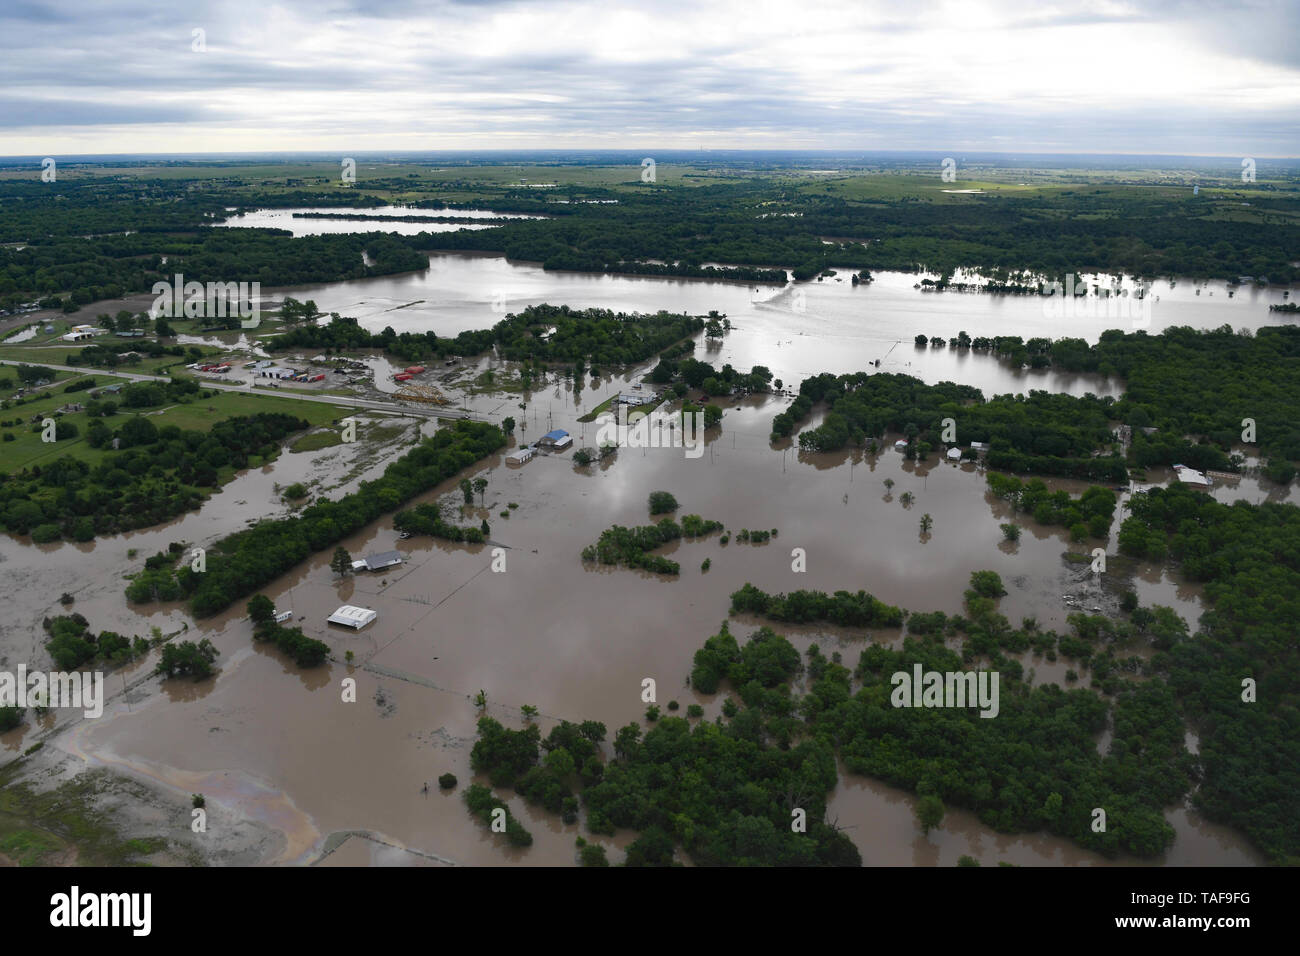 Vue aérienne de l'inondation sur les rives de la rivière Arkansas le 22 mai 2019 à Tulsa, Oklahoma. Plus de 1 000 foyers ont été touchés par les inondations portées par la pluie extrême accompagné de tornades. Banque D'Images